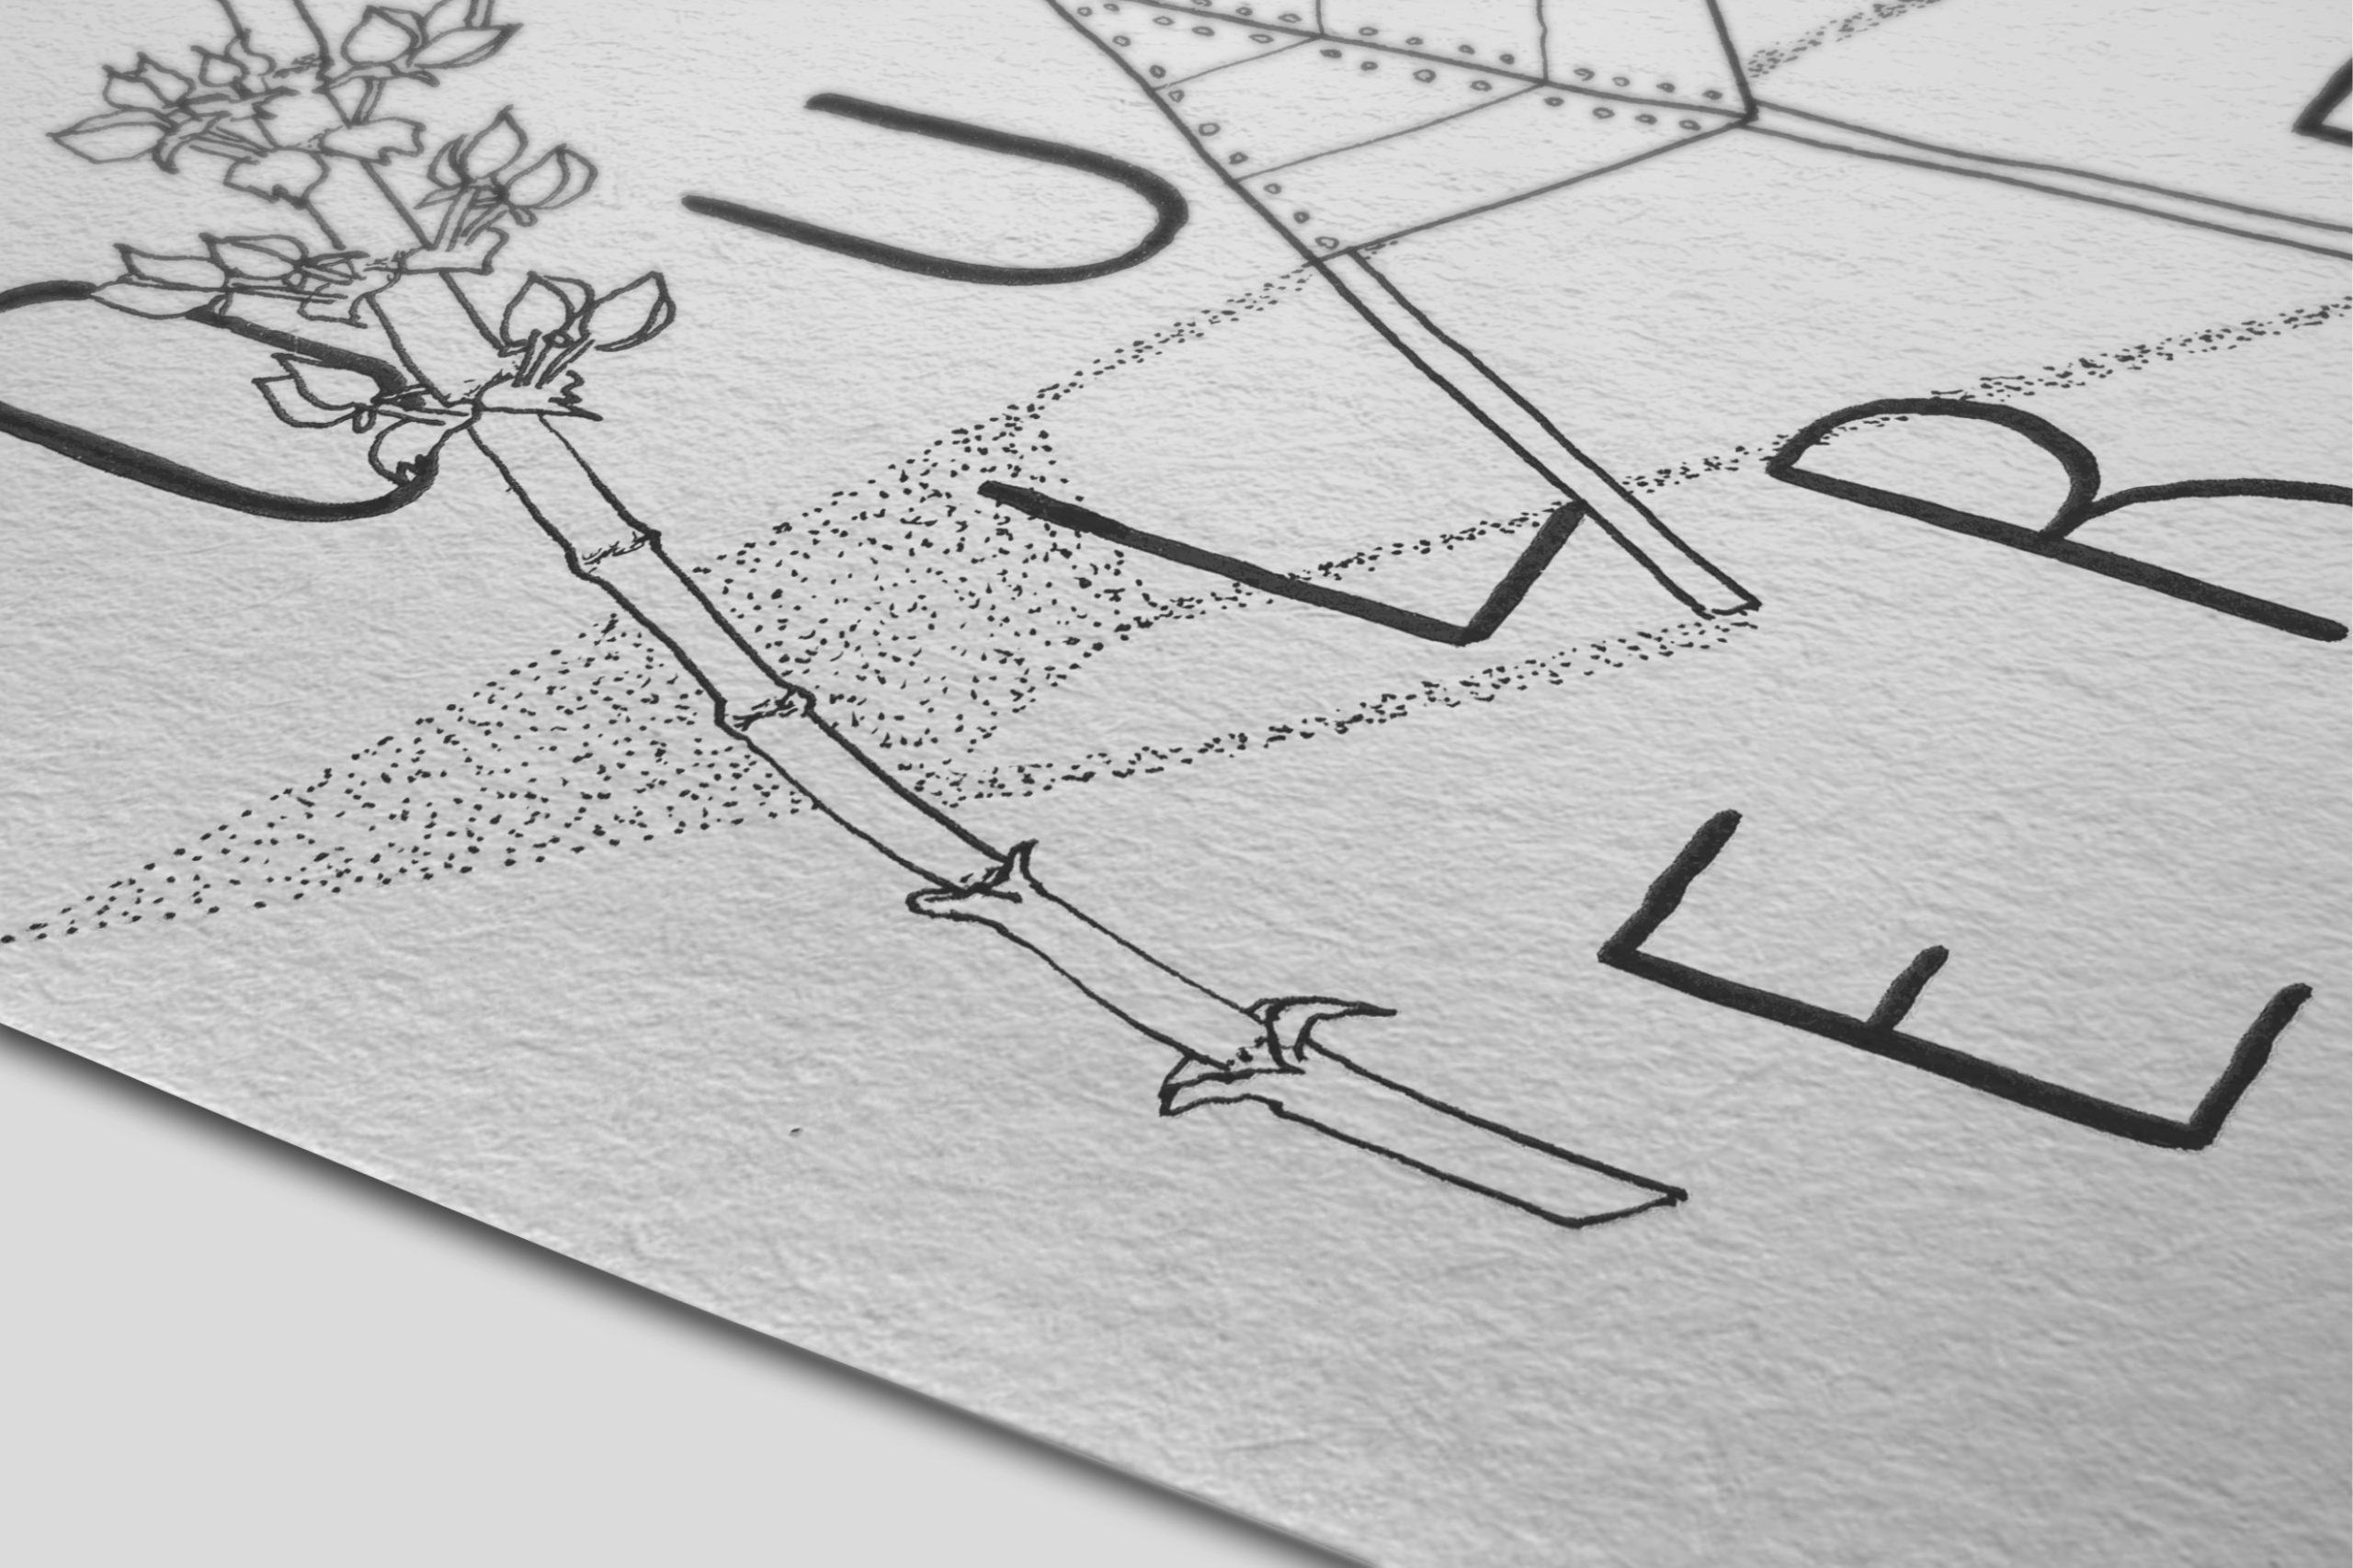 carte-postale-closeup-postcard-illustration-graphic-design-pouillerel-la-chaux-de-fonds-atelier-tertre